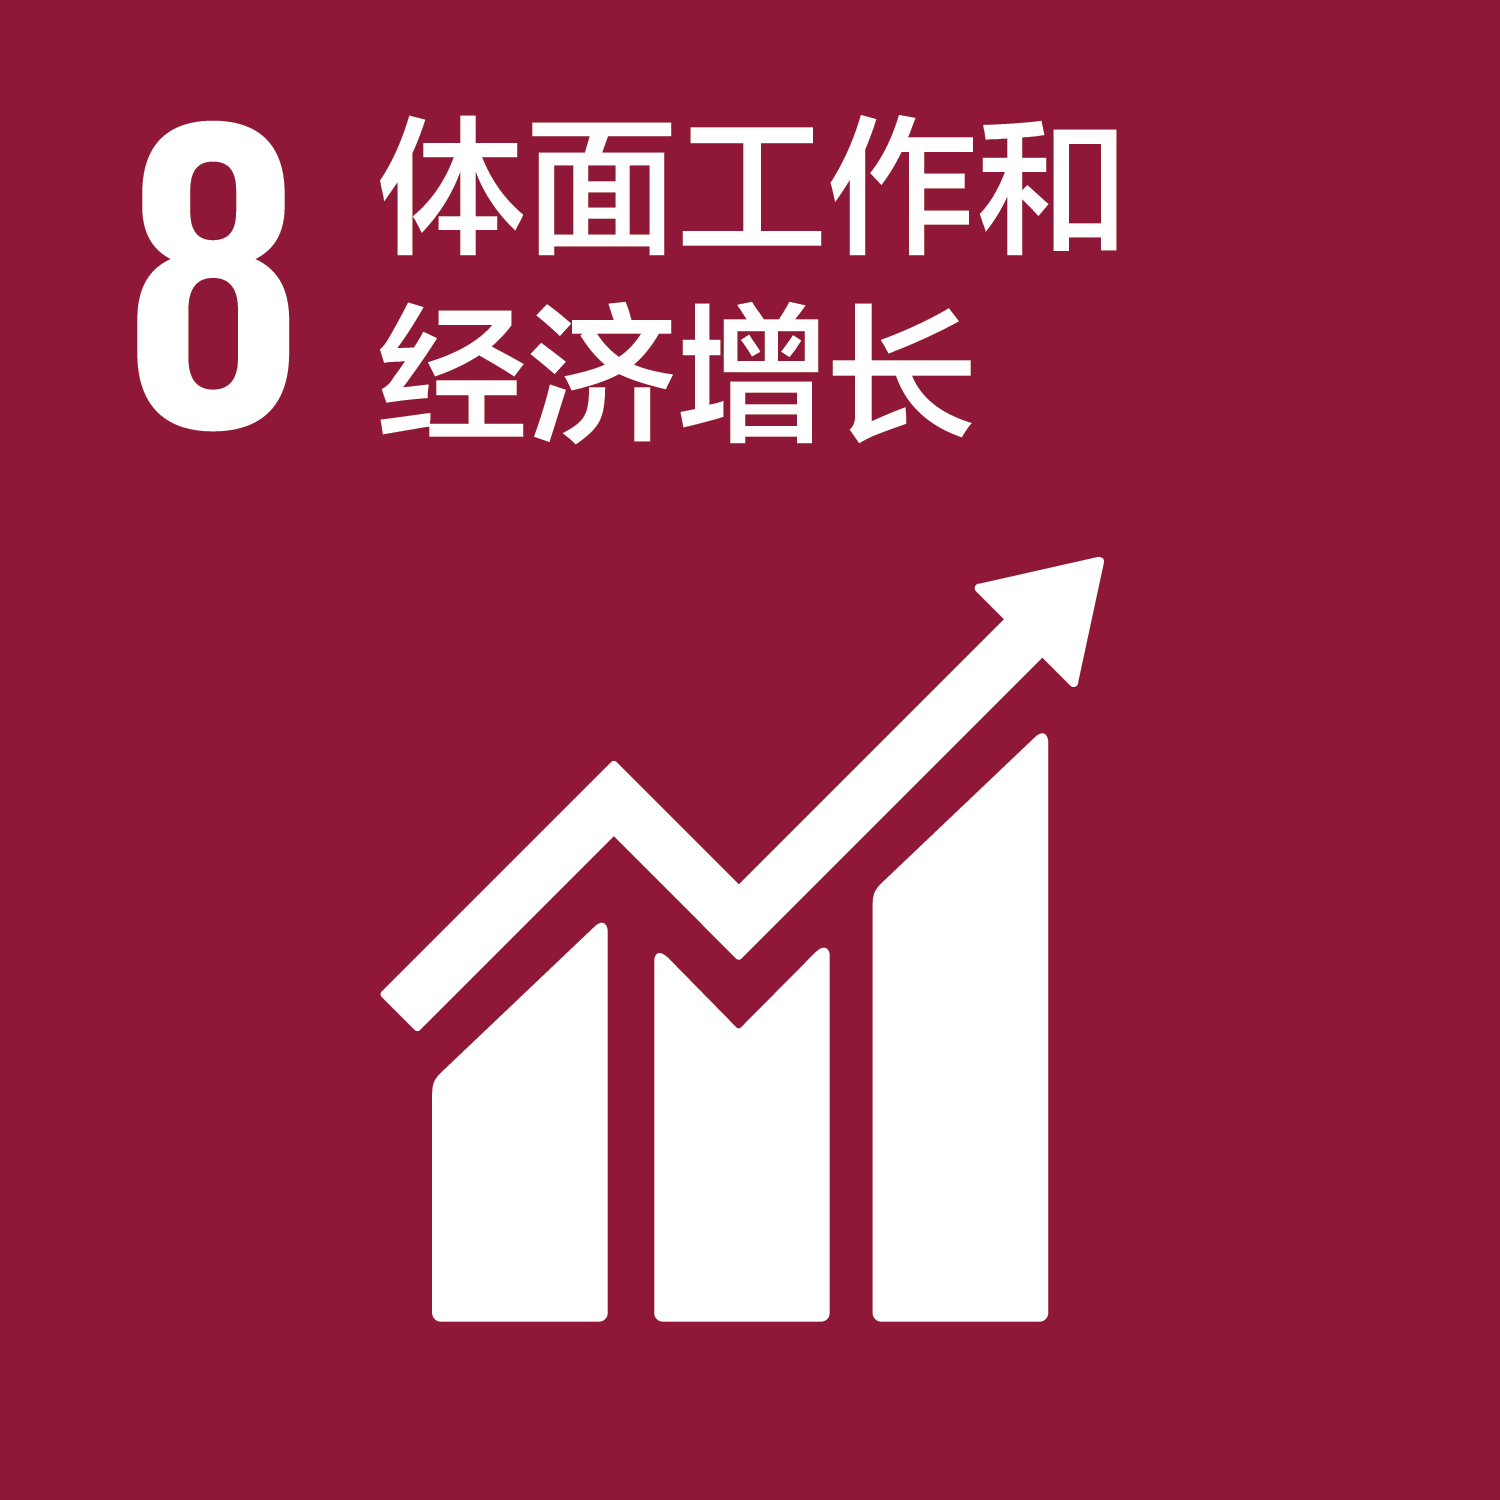 可持续发展目标-8体面的工作和经济增长